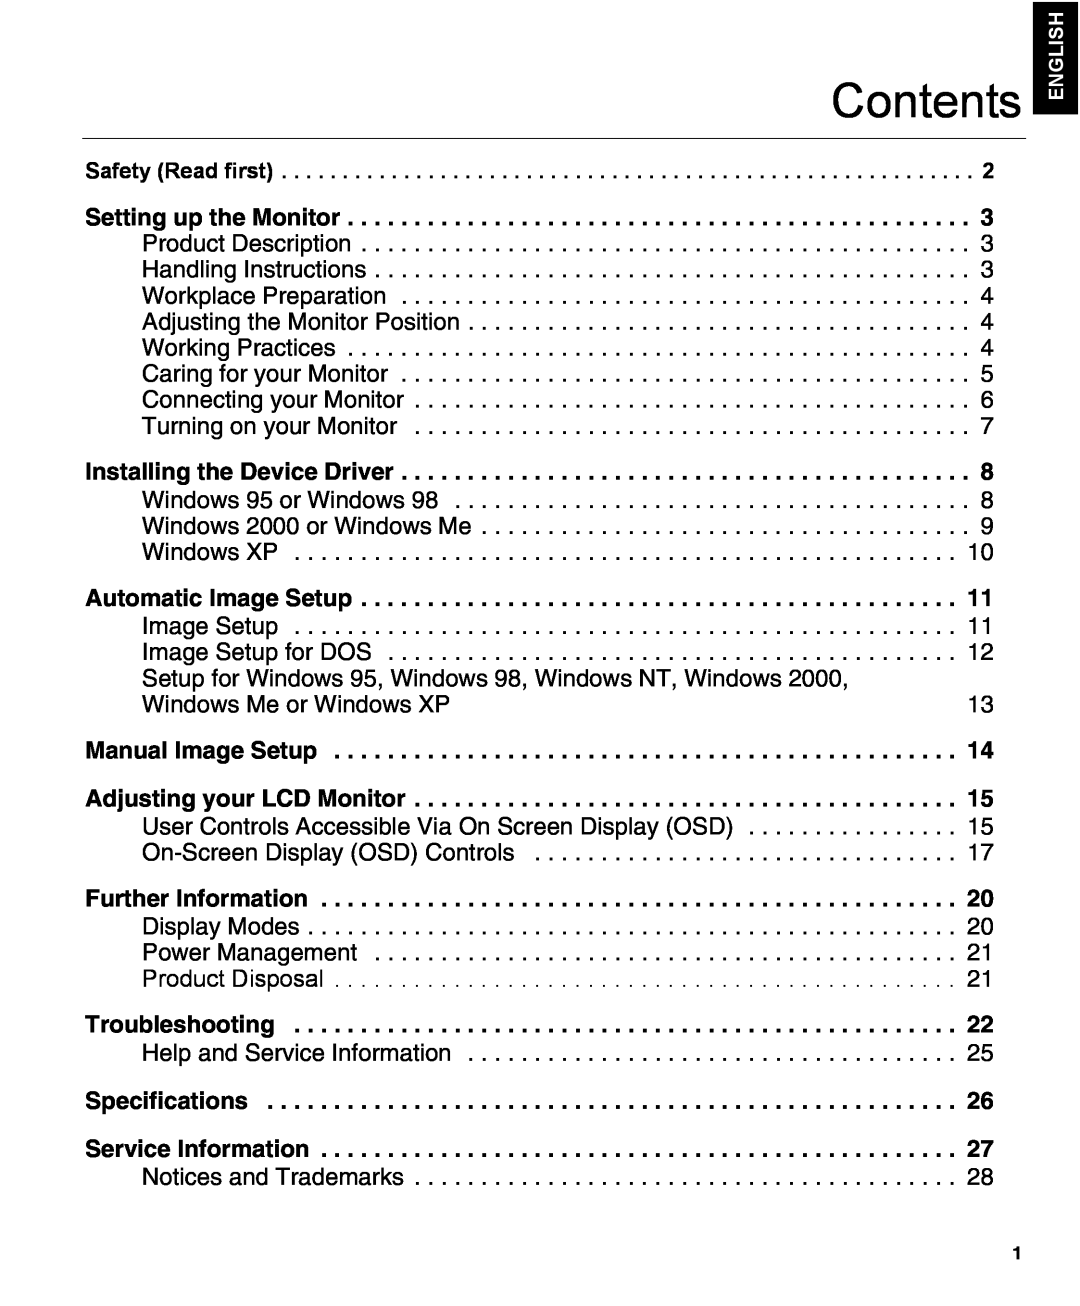 IBM L150 manual Contents 